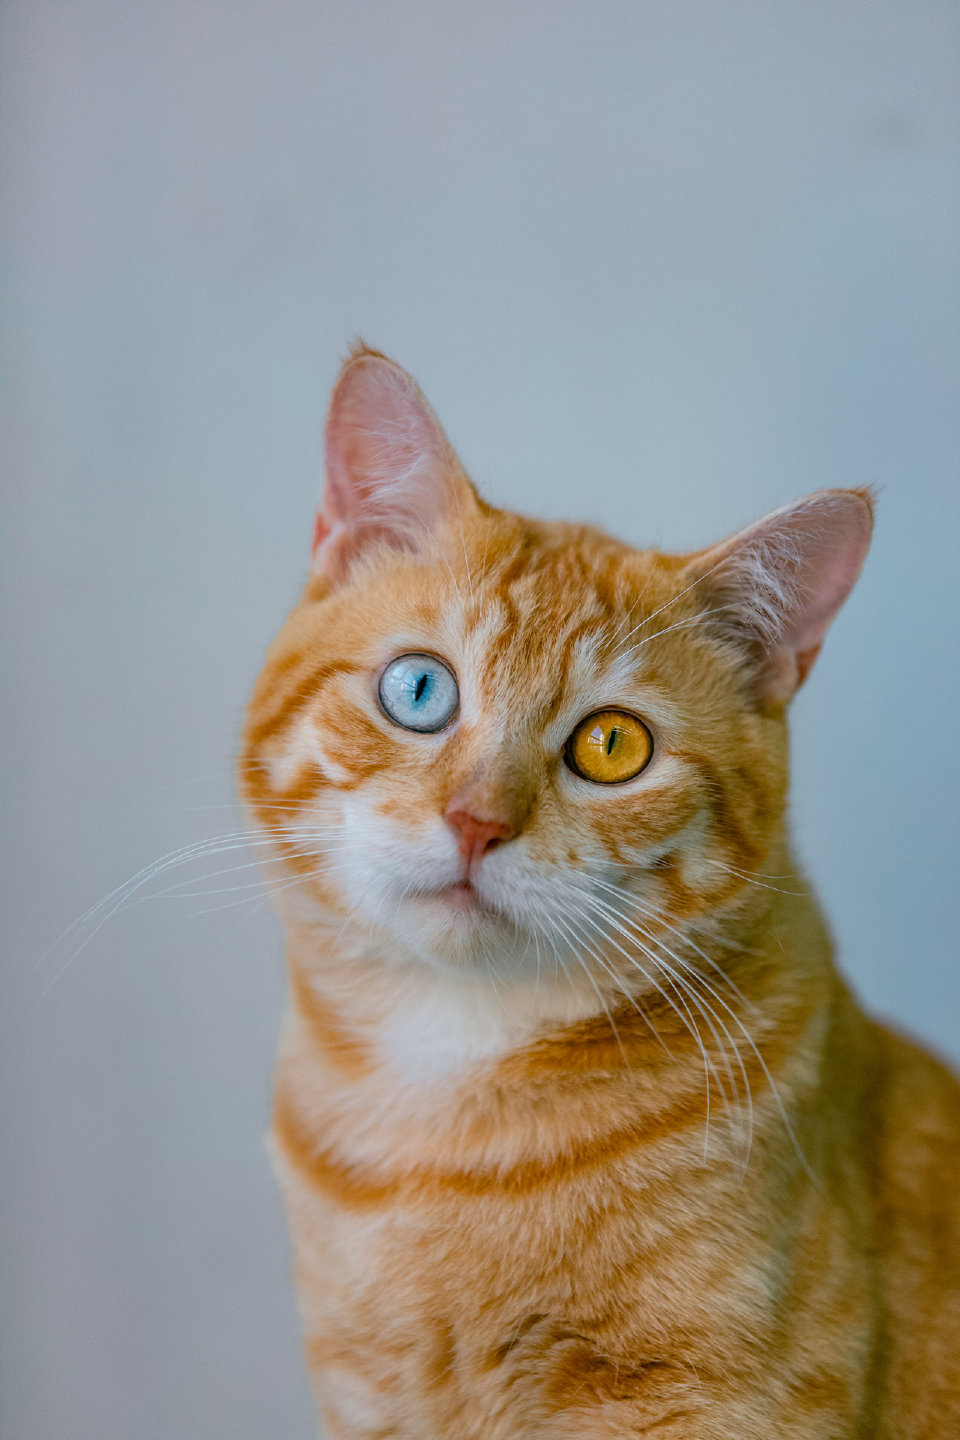 锦鲤之猫～ 橘白异瞳也太好看了吧！
|高清壁纸|猫猫壁纸|萌宠壁纸头像|